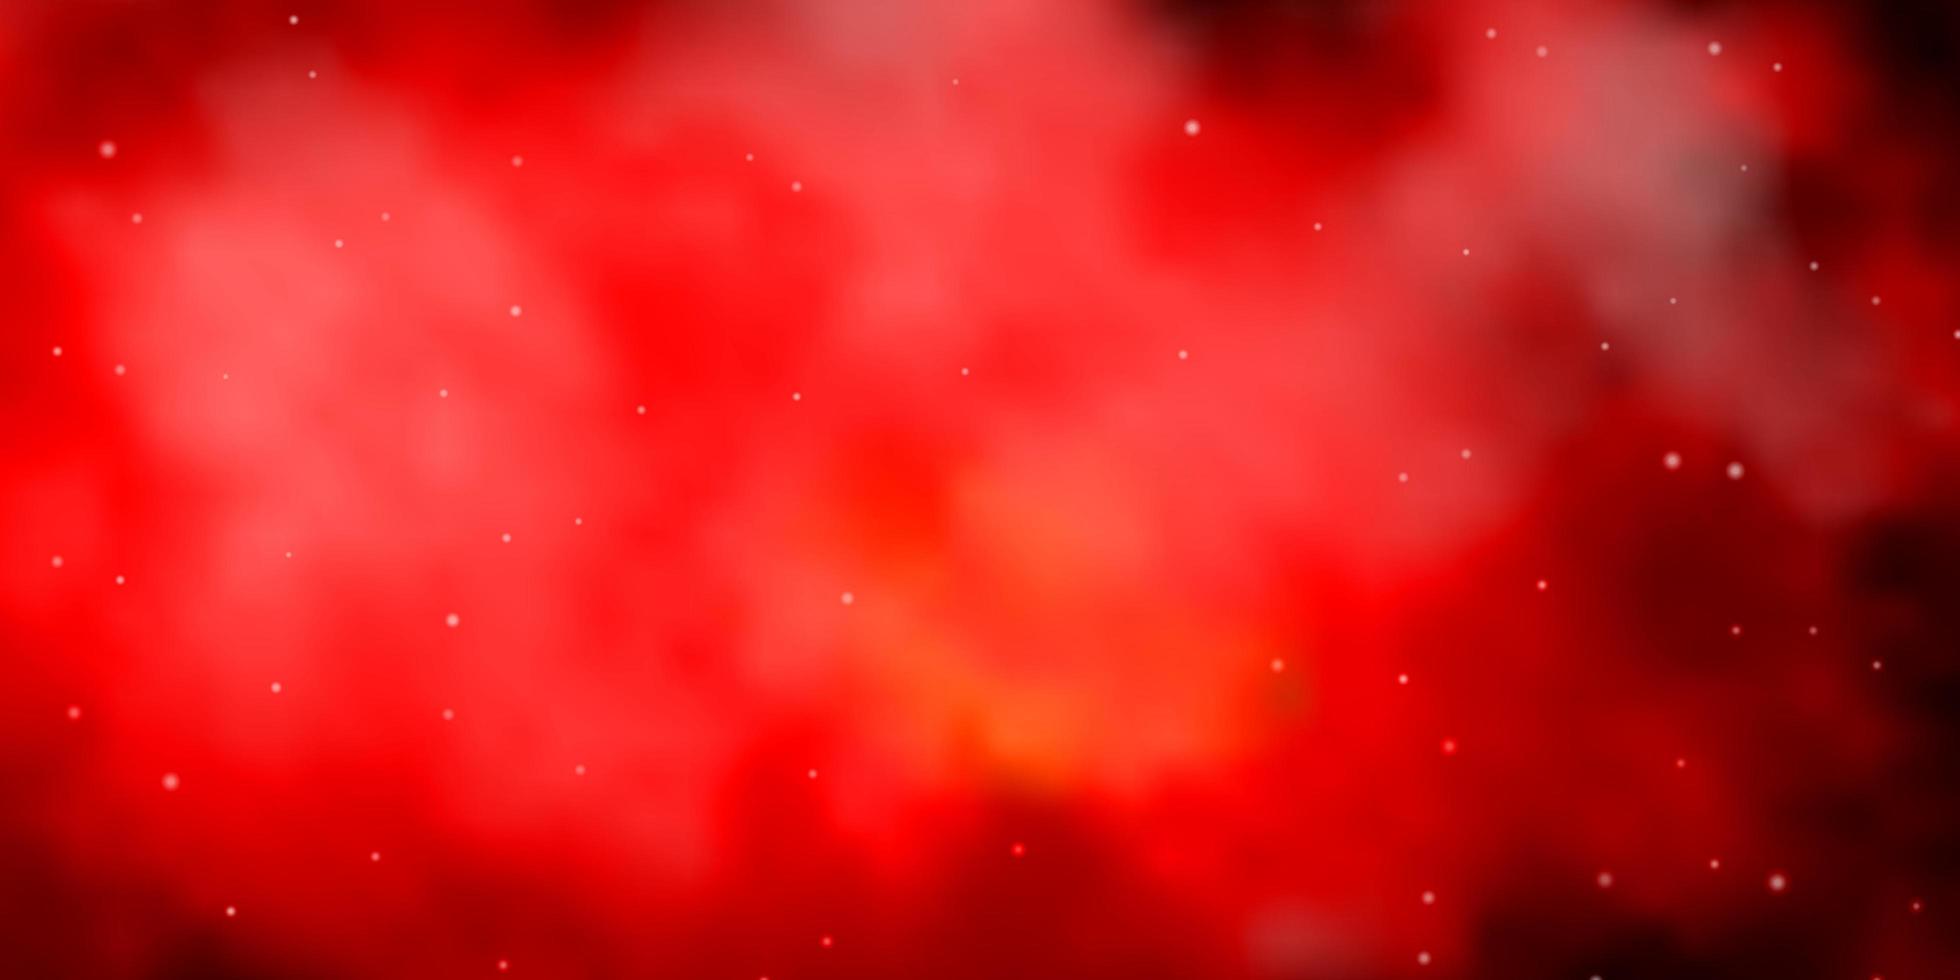 dunkelorangefarbenes Vektorlayout mit hellen Sternen. leuchtende bunte Illustration mit kleinen und großen Sternen. Muster für Websites, Zielseiten. vektor